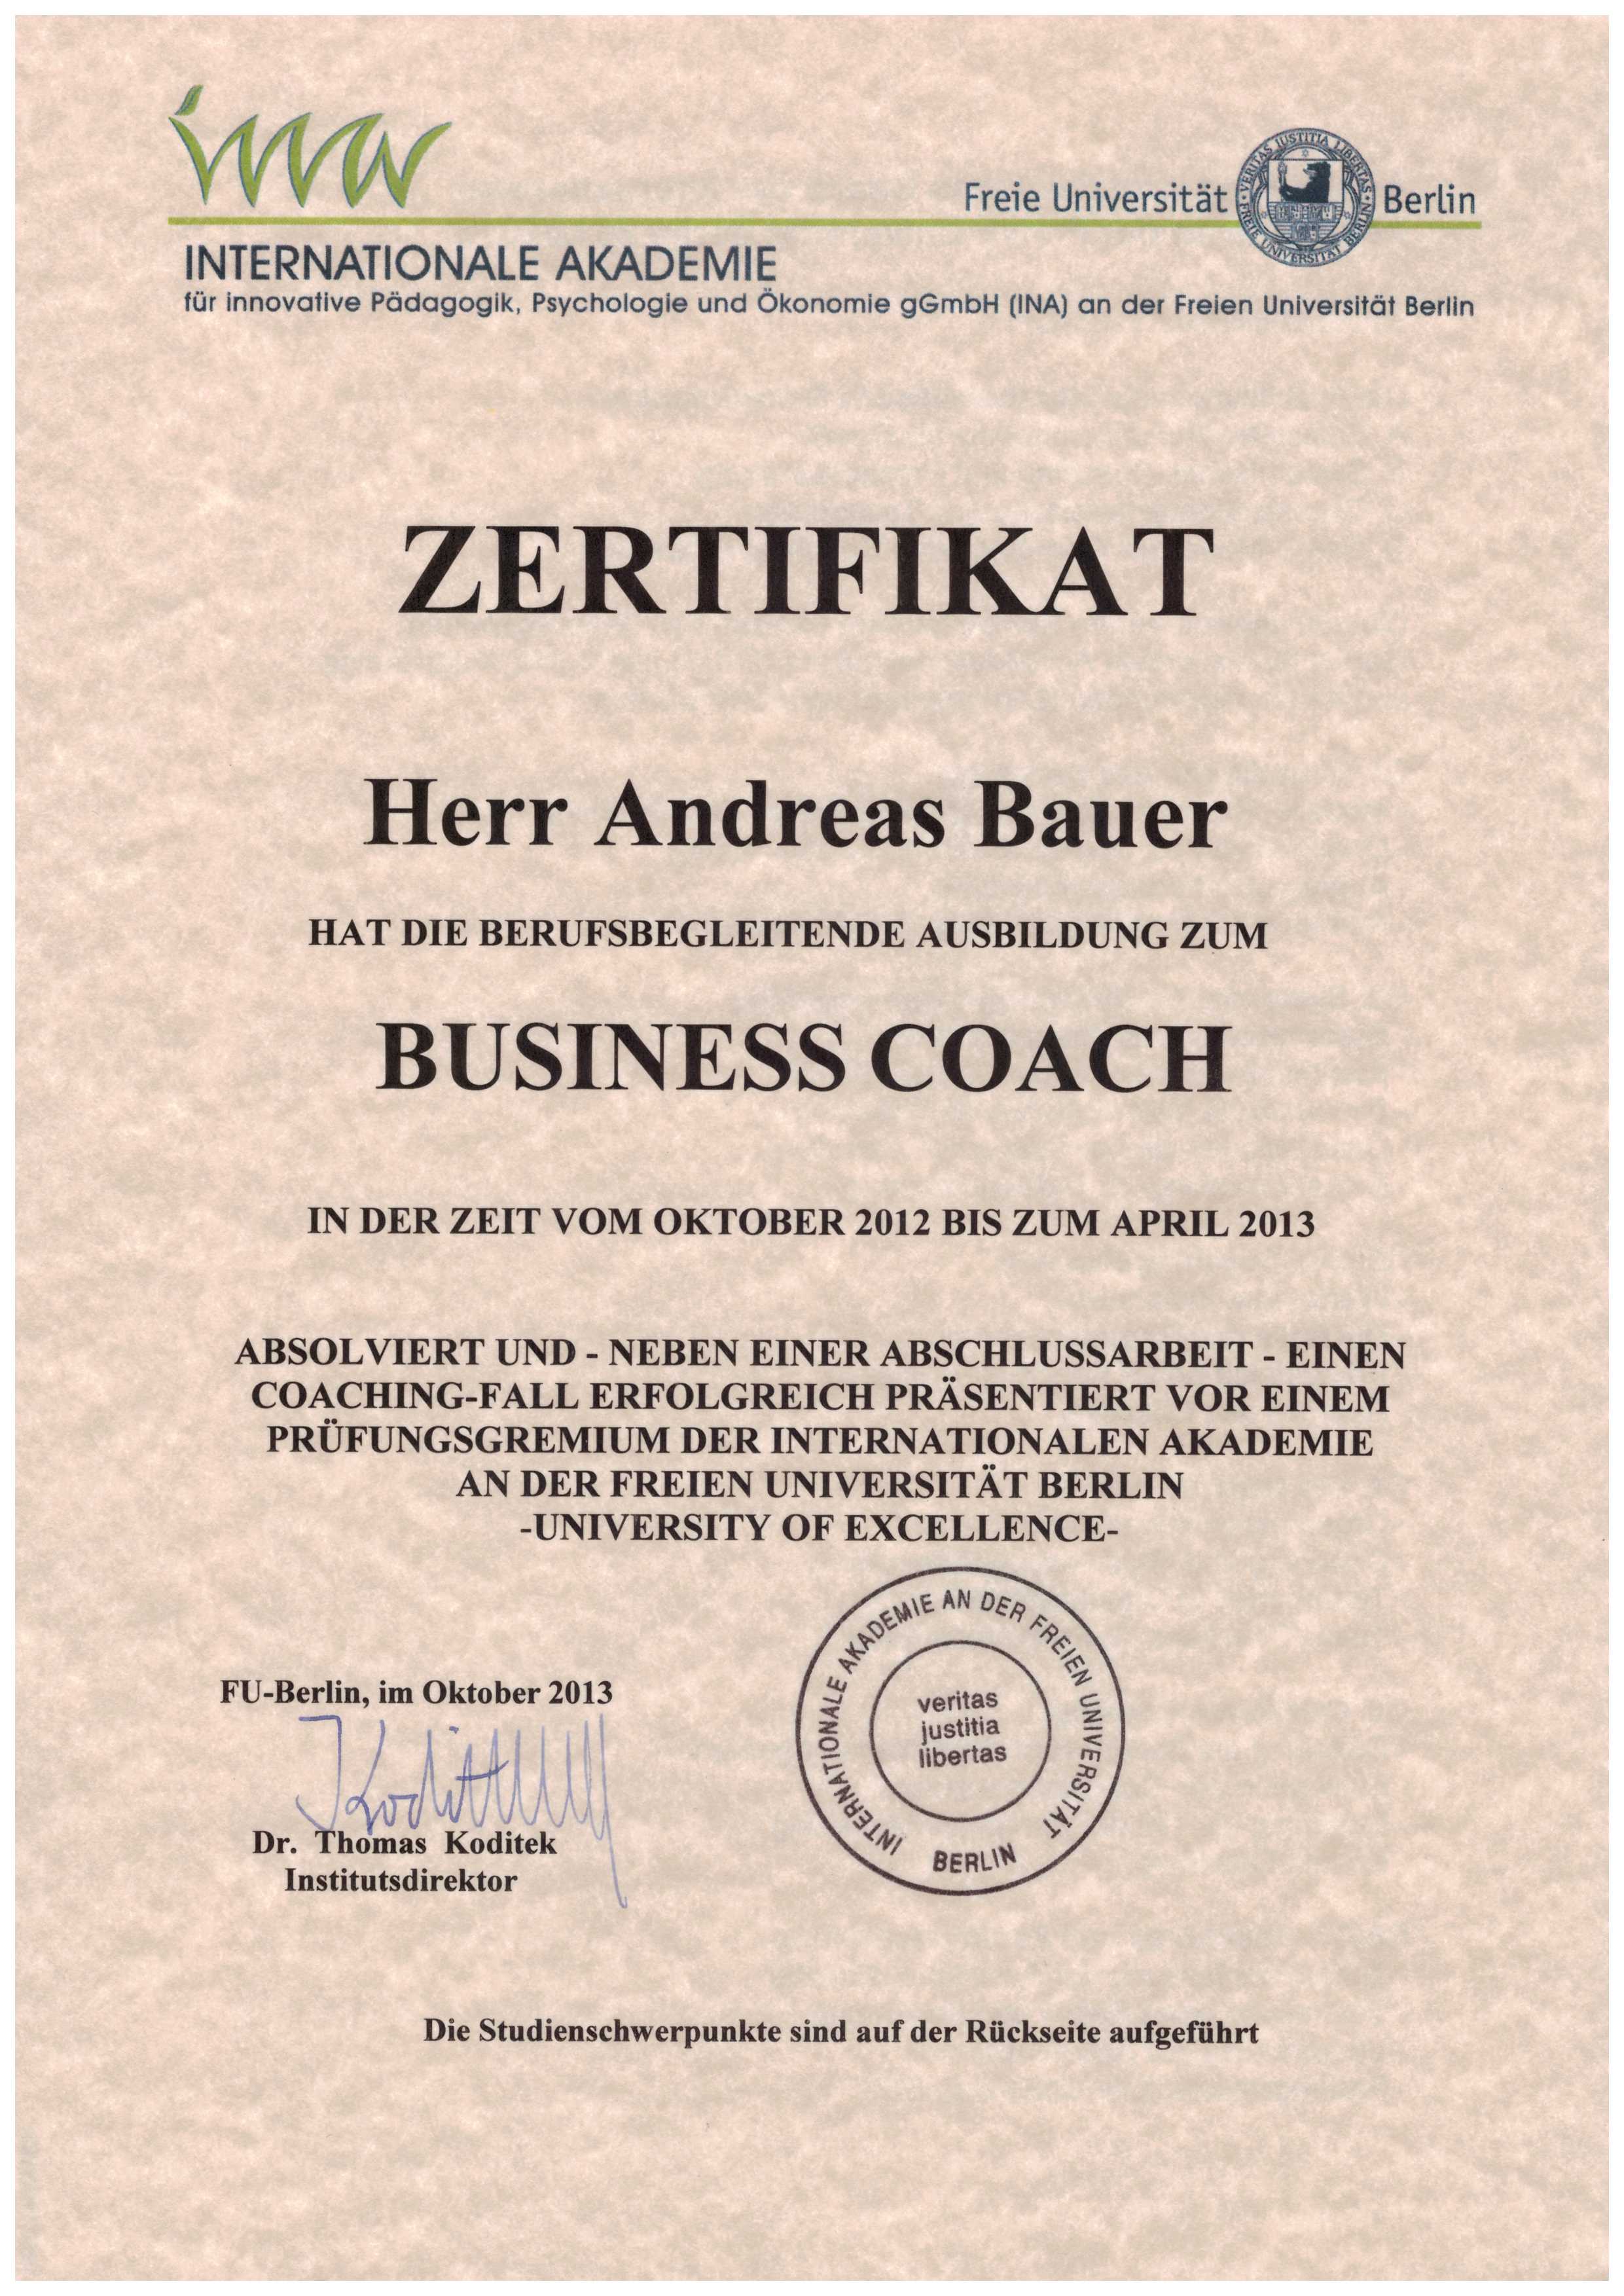 Andreas Bauer Online Coach Zertifikat Uni Berlin